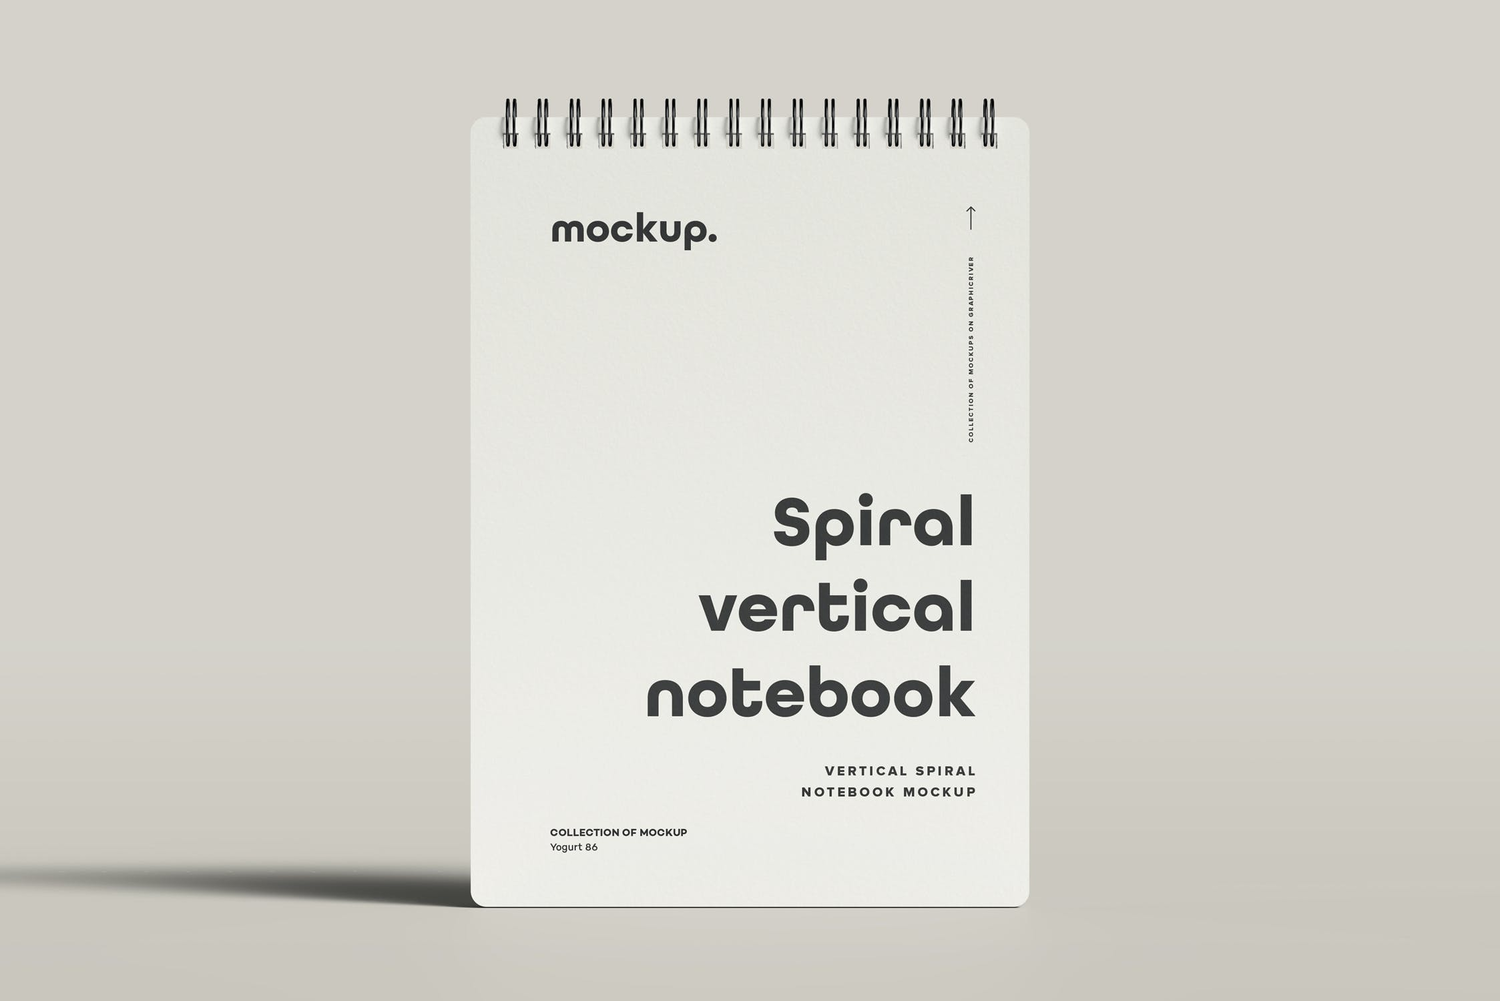 4765 线圈笔记本记事本文创文具封面设计作品贴图ps样机素材展示效果 Spiral Notebook Mock-up 2@GOOODME.COM